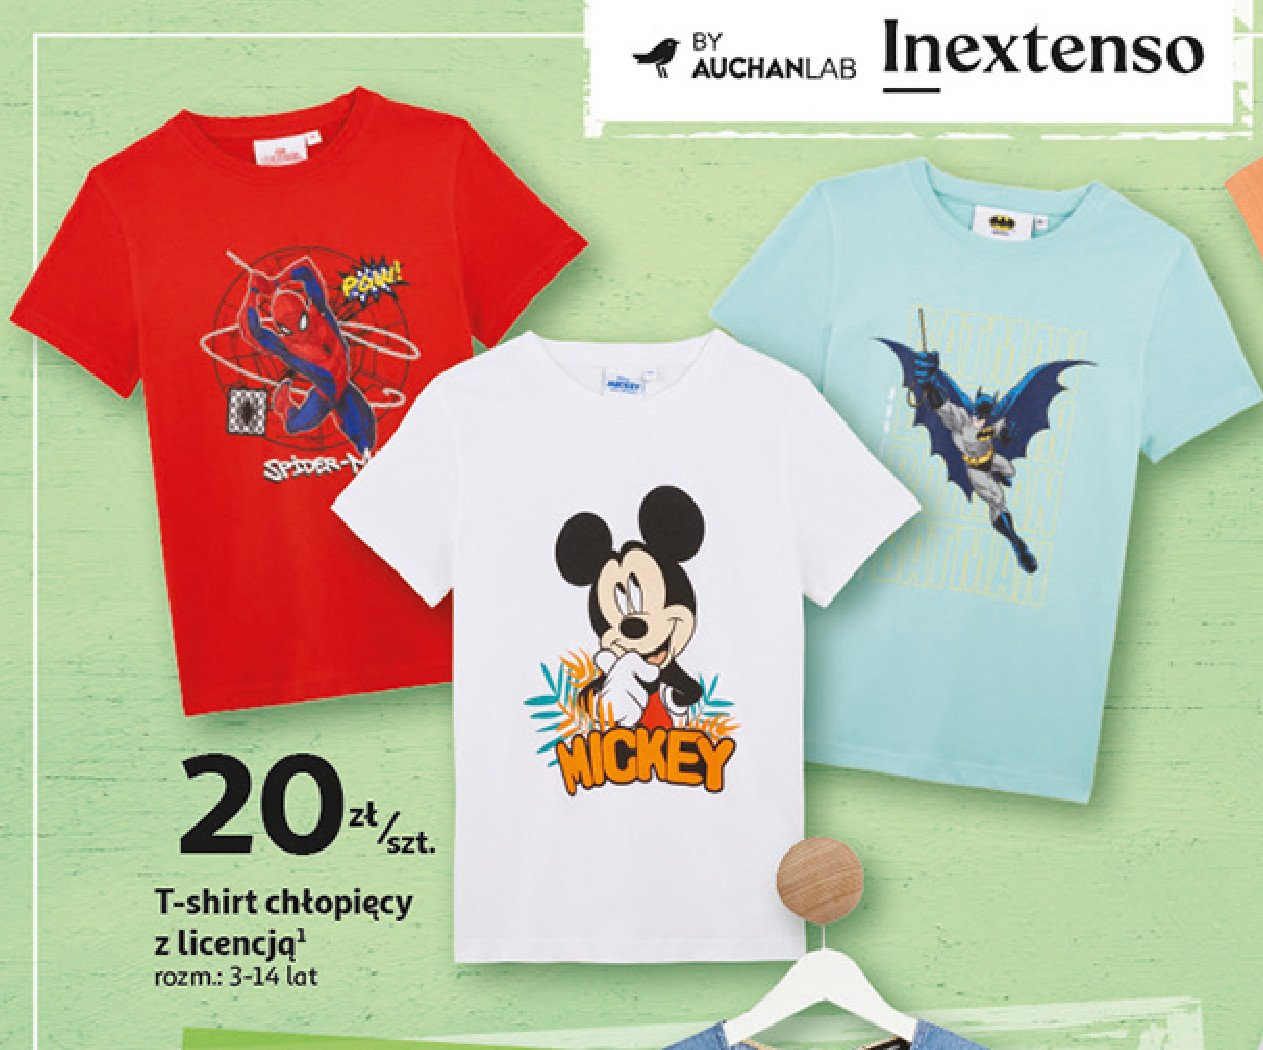 T-shirt chłopięcy myszka miki 3-14 lat Auchan inextenso promocja